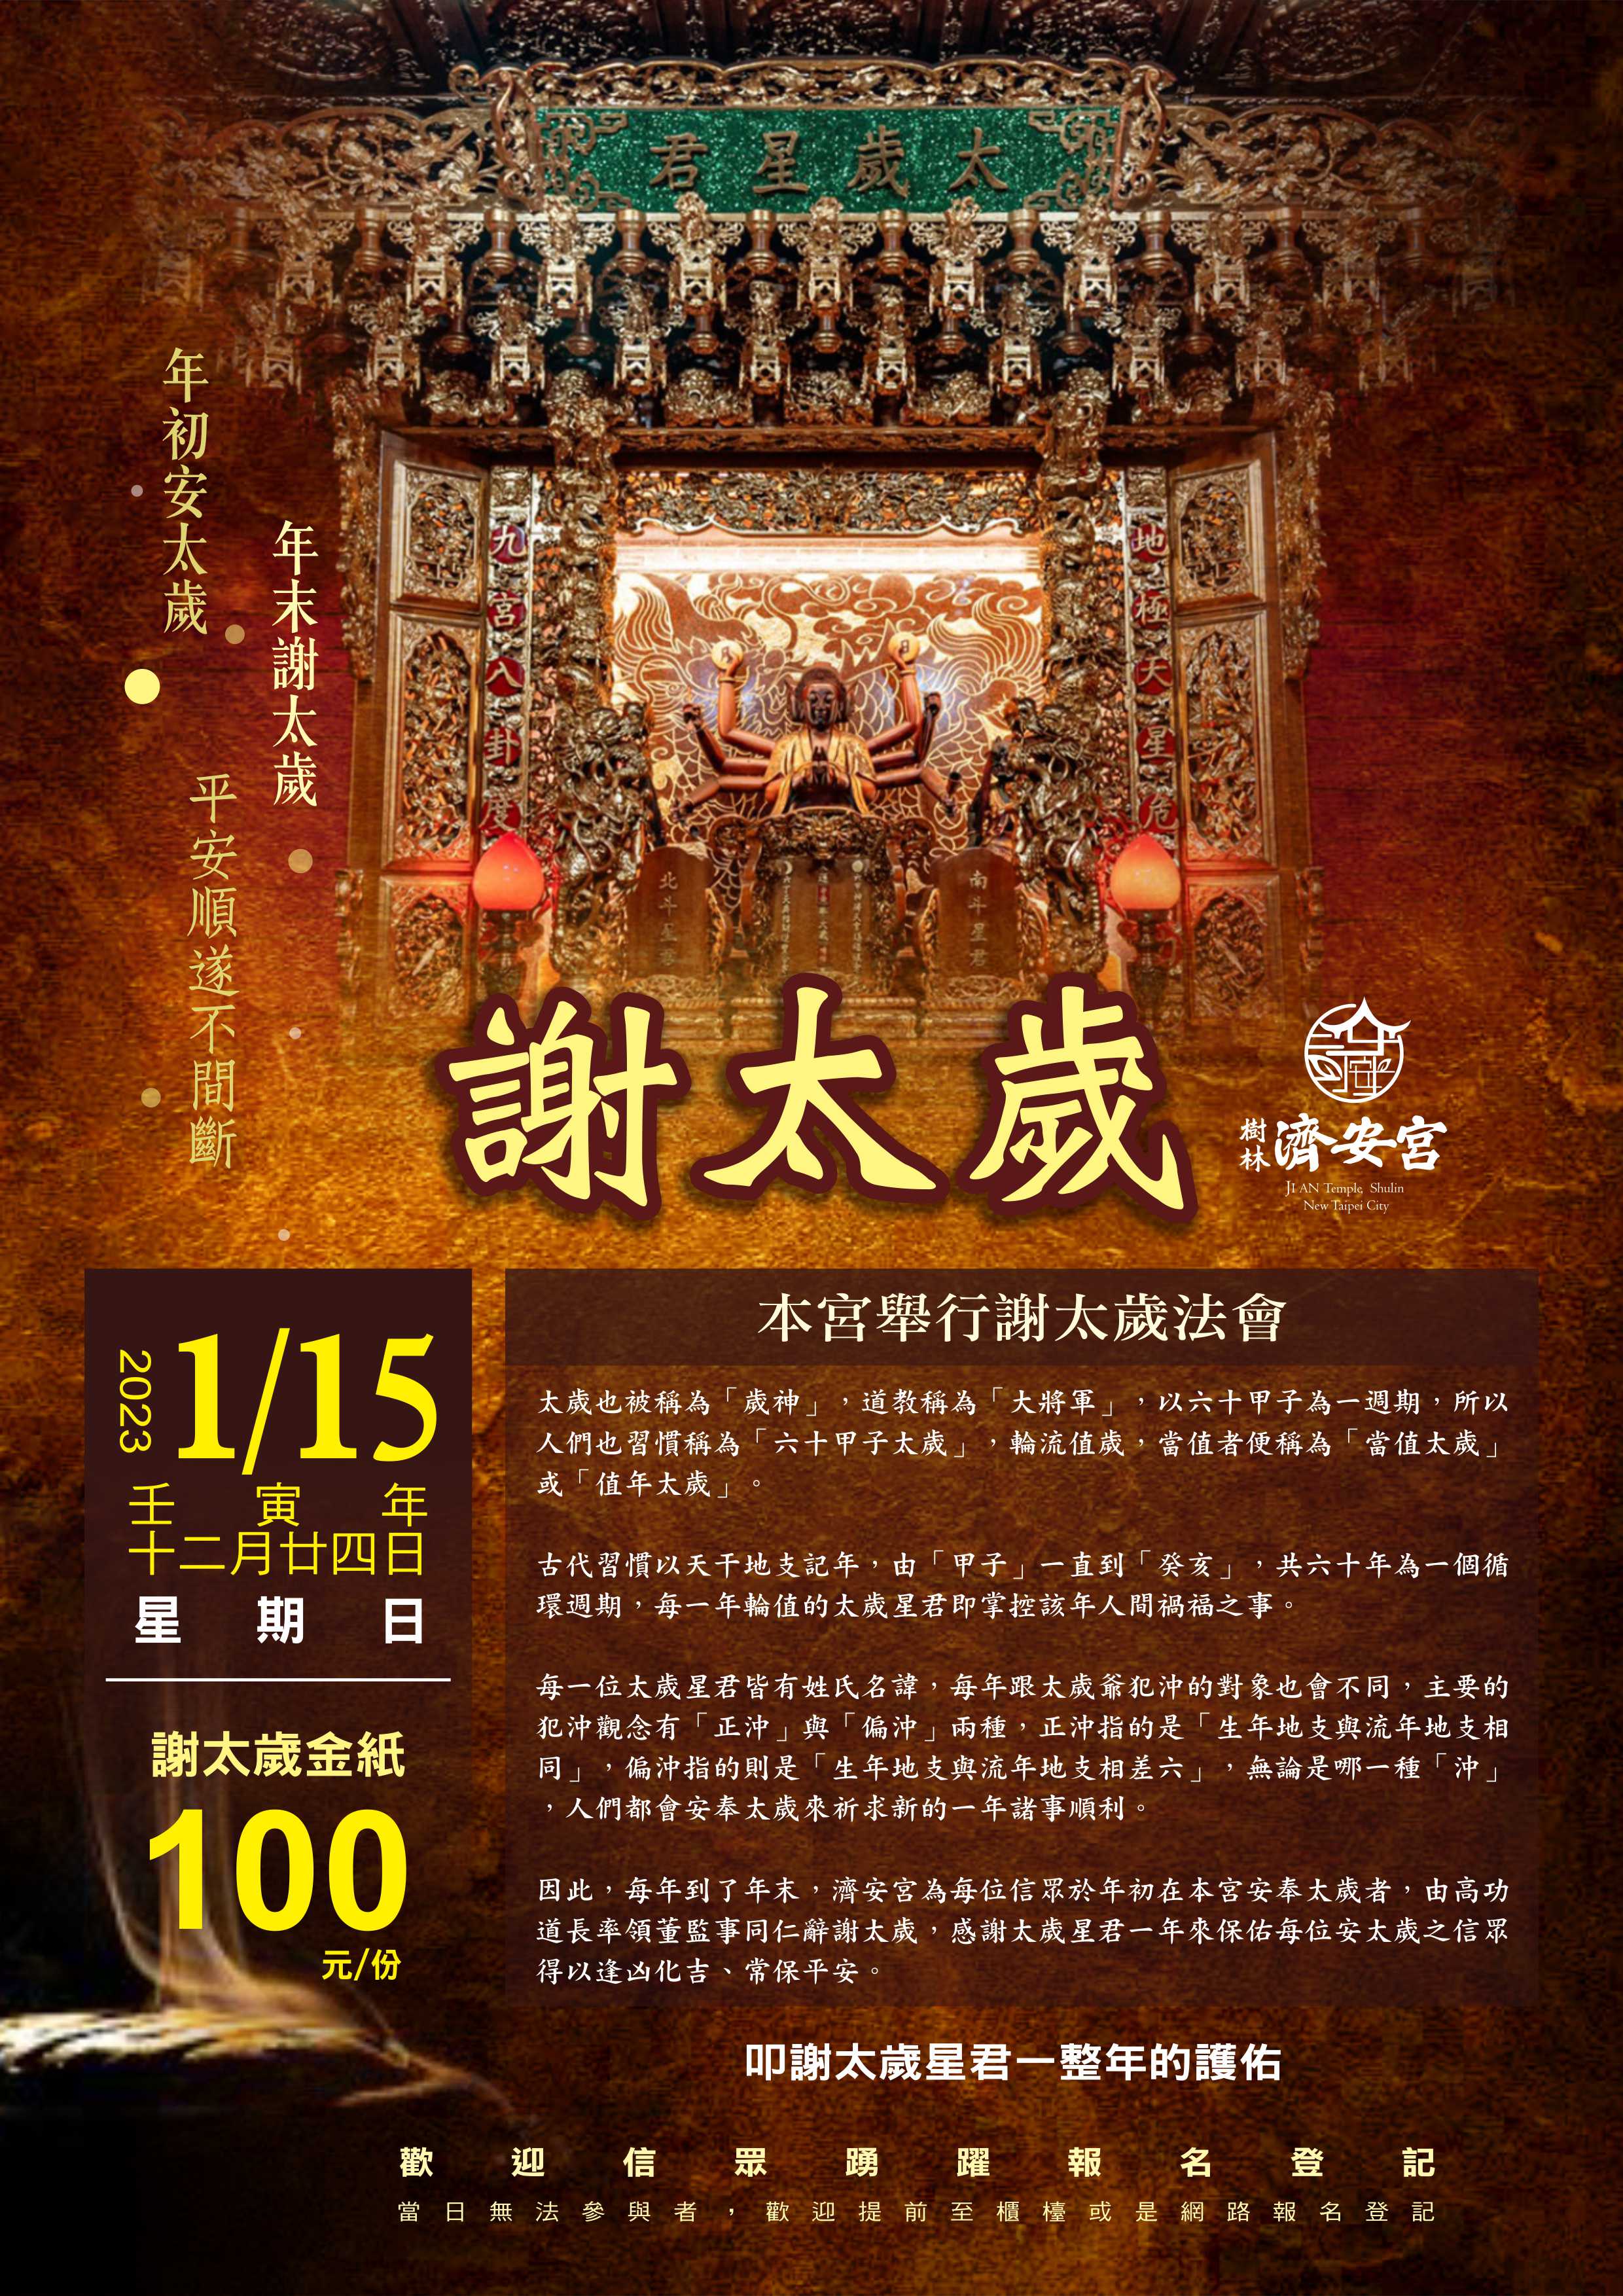 樹林濟安宮於農曆12月24日舉辦謝太歲法會